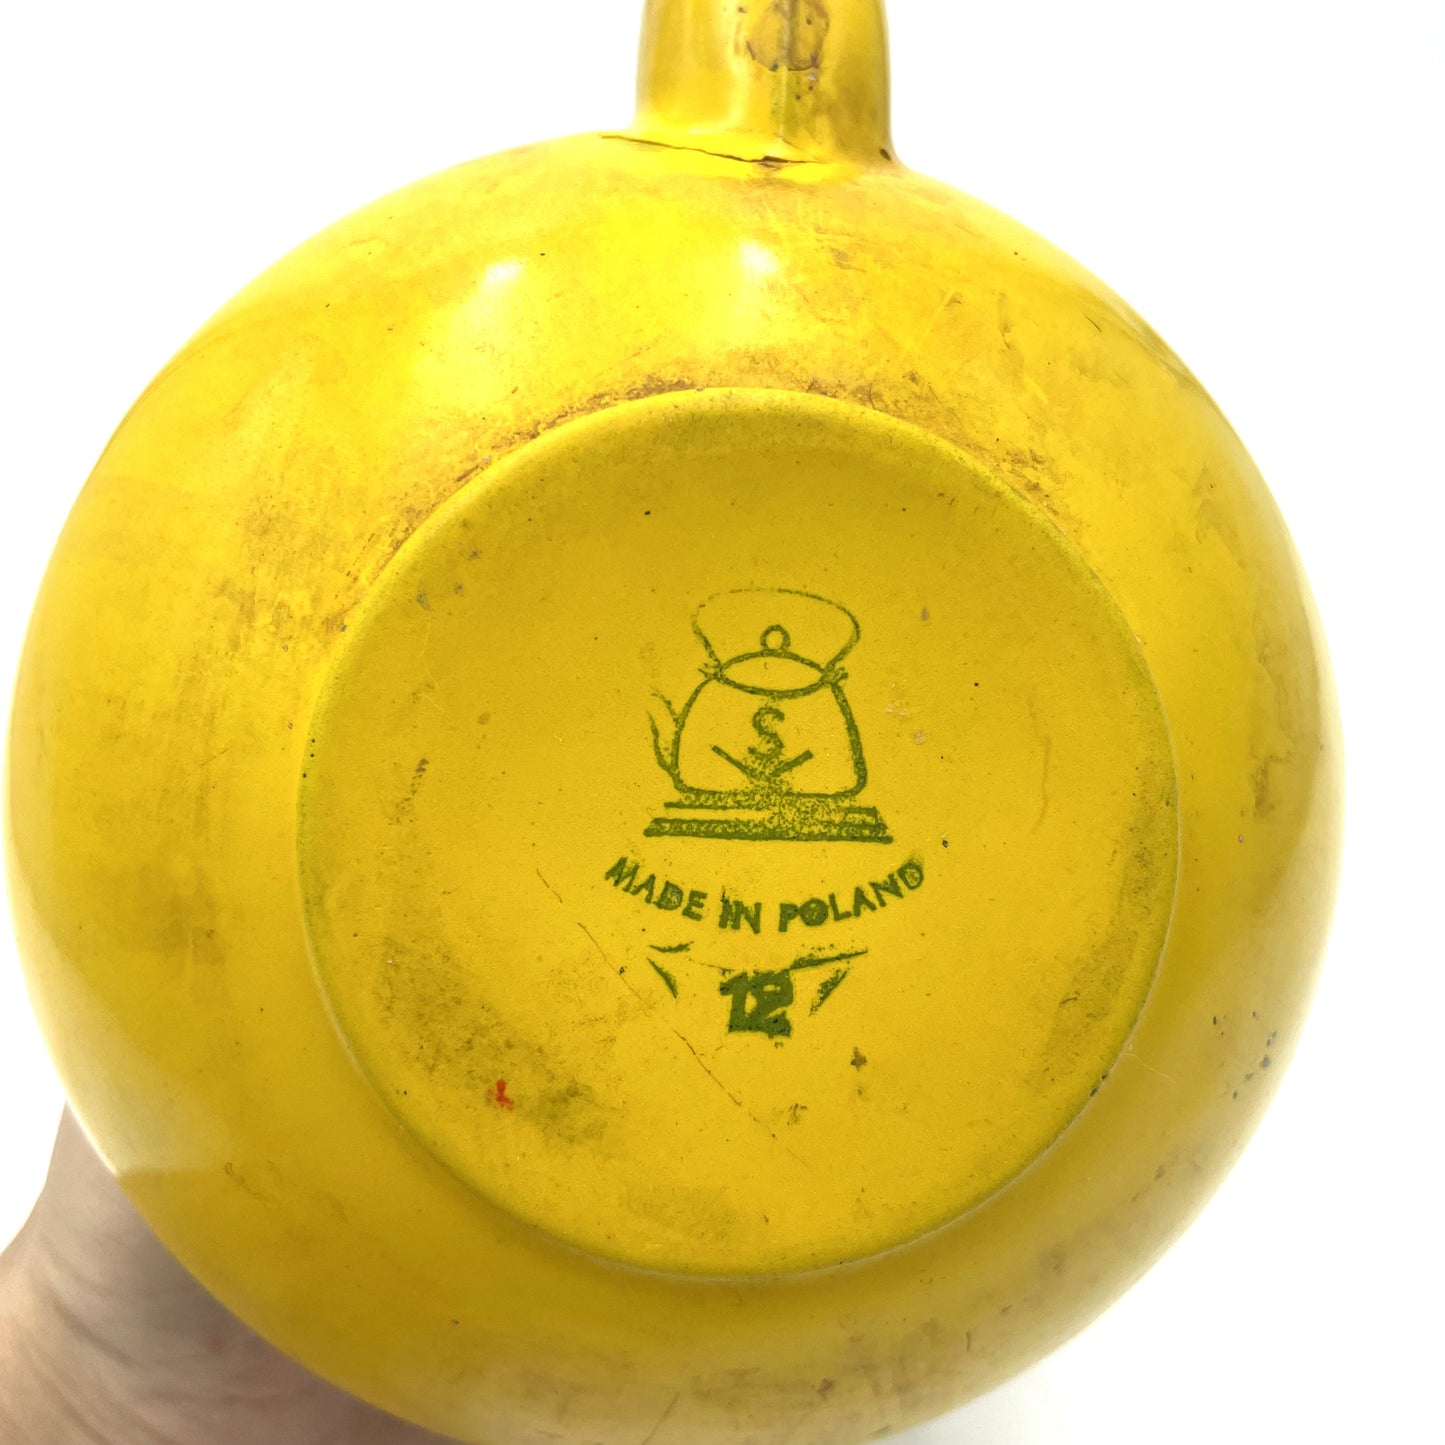 Vintage Yellow Enamel Teapot Made in Poland - 14cm